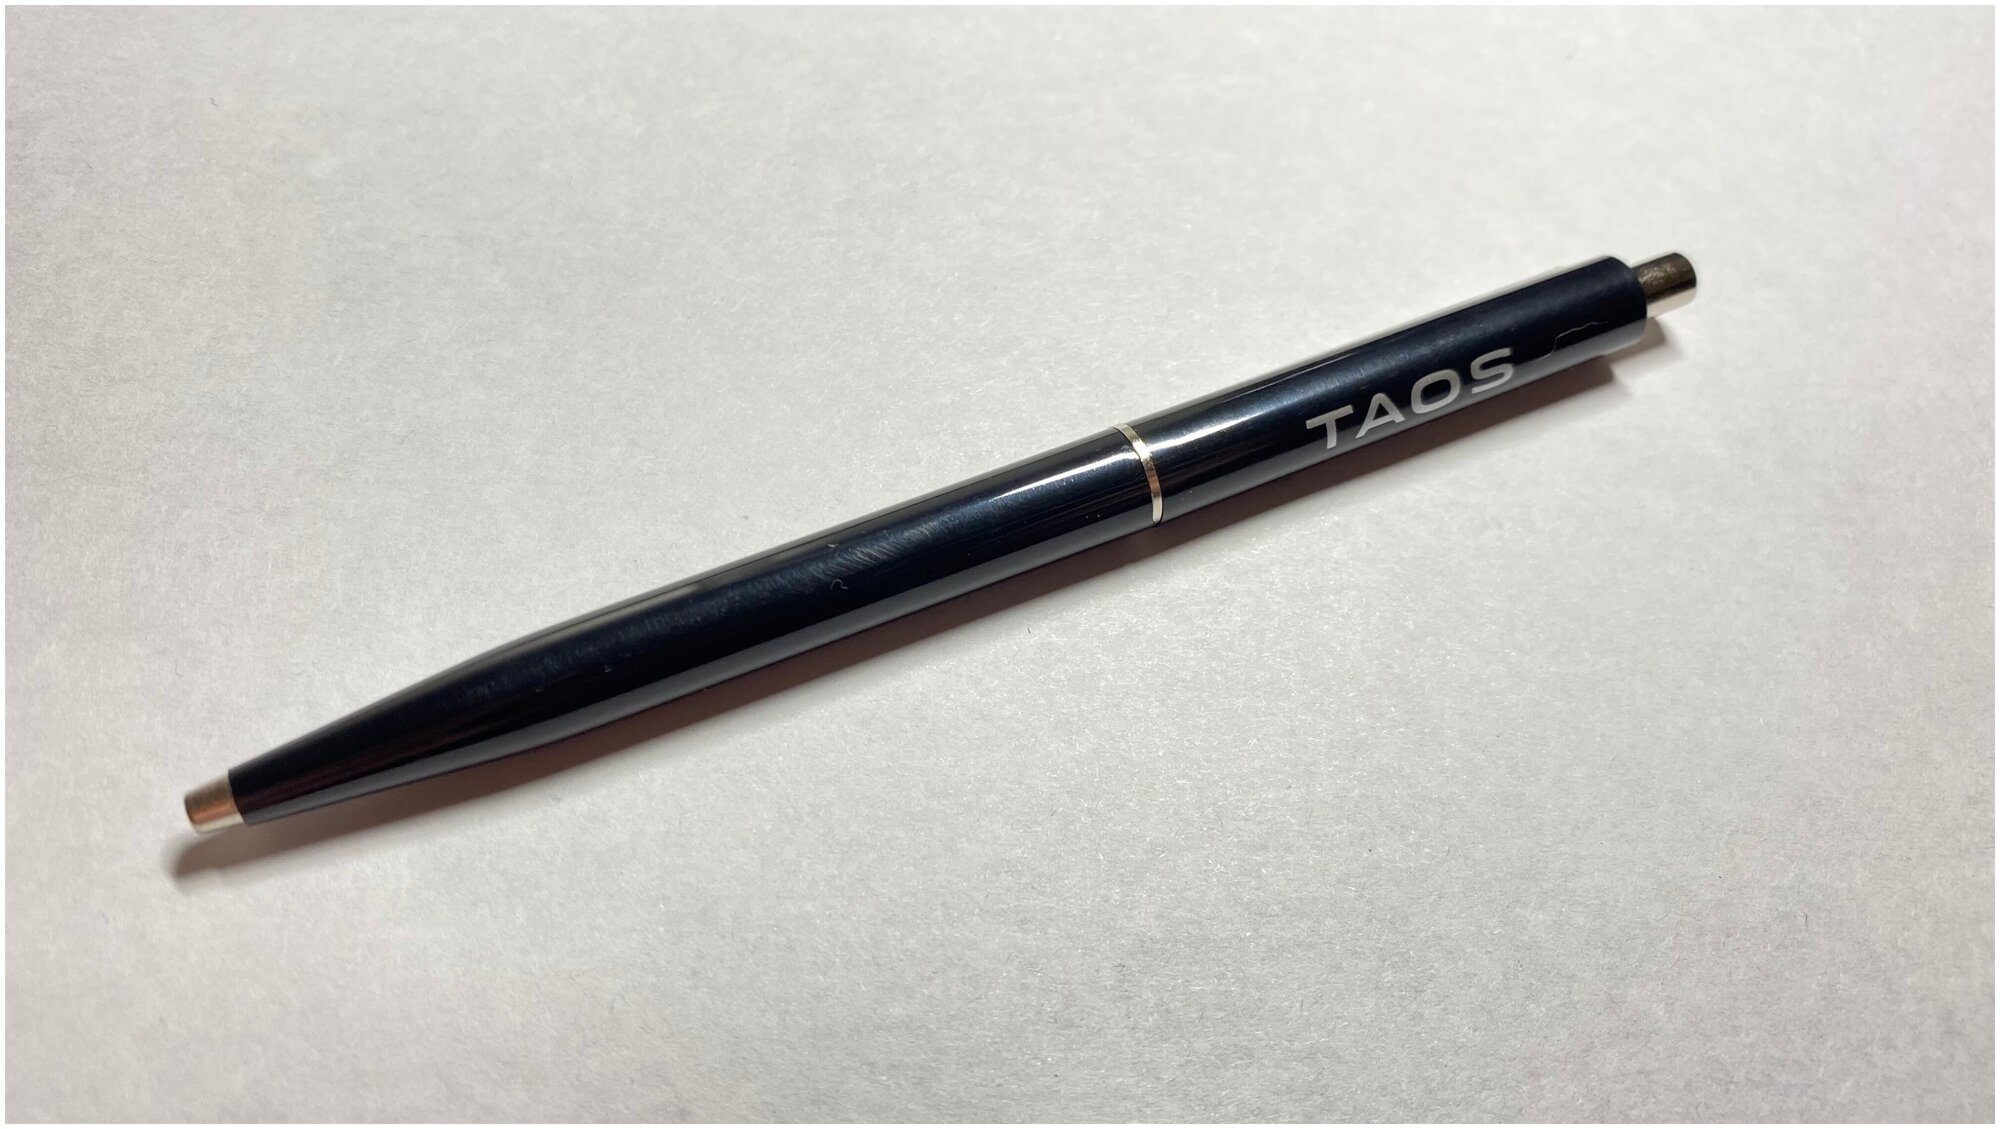 Шариковая ручка Volkswagen Taos Pen Официальная коллекция Volkswagen 2GJ087210